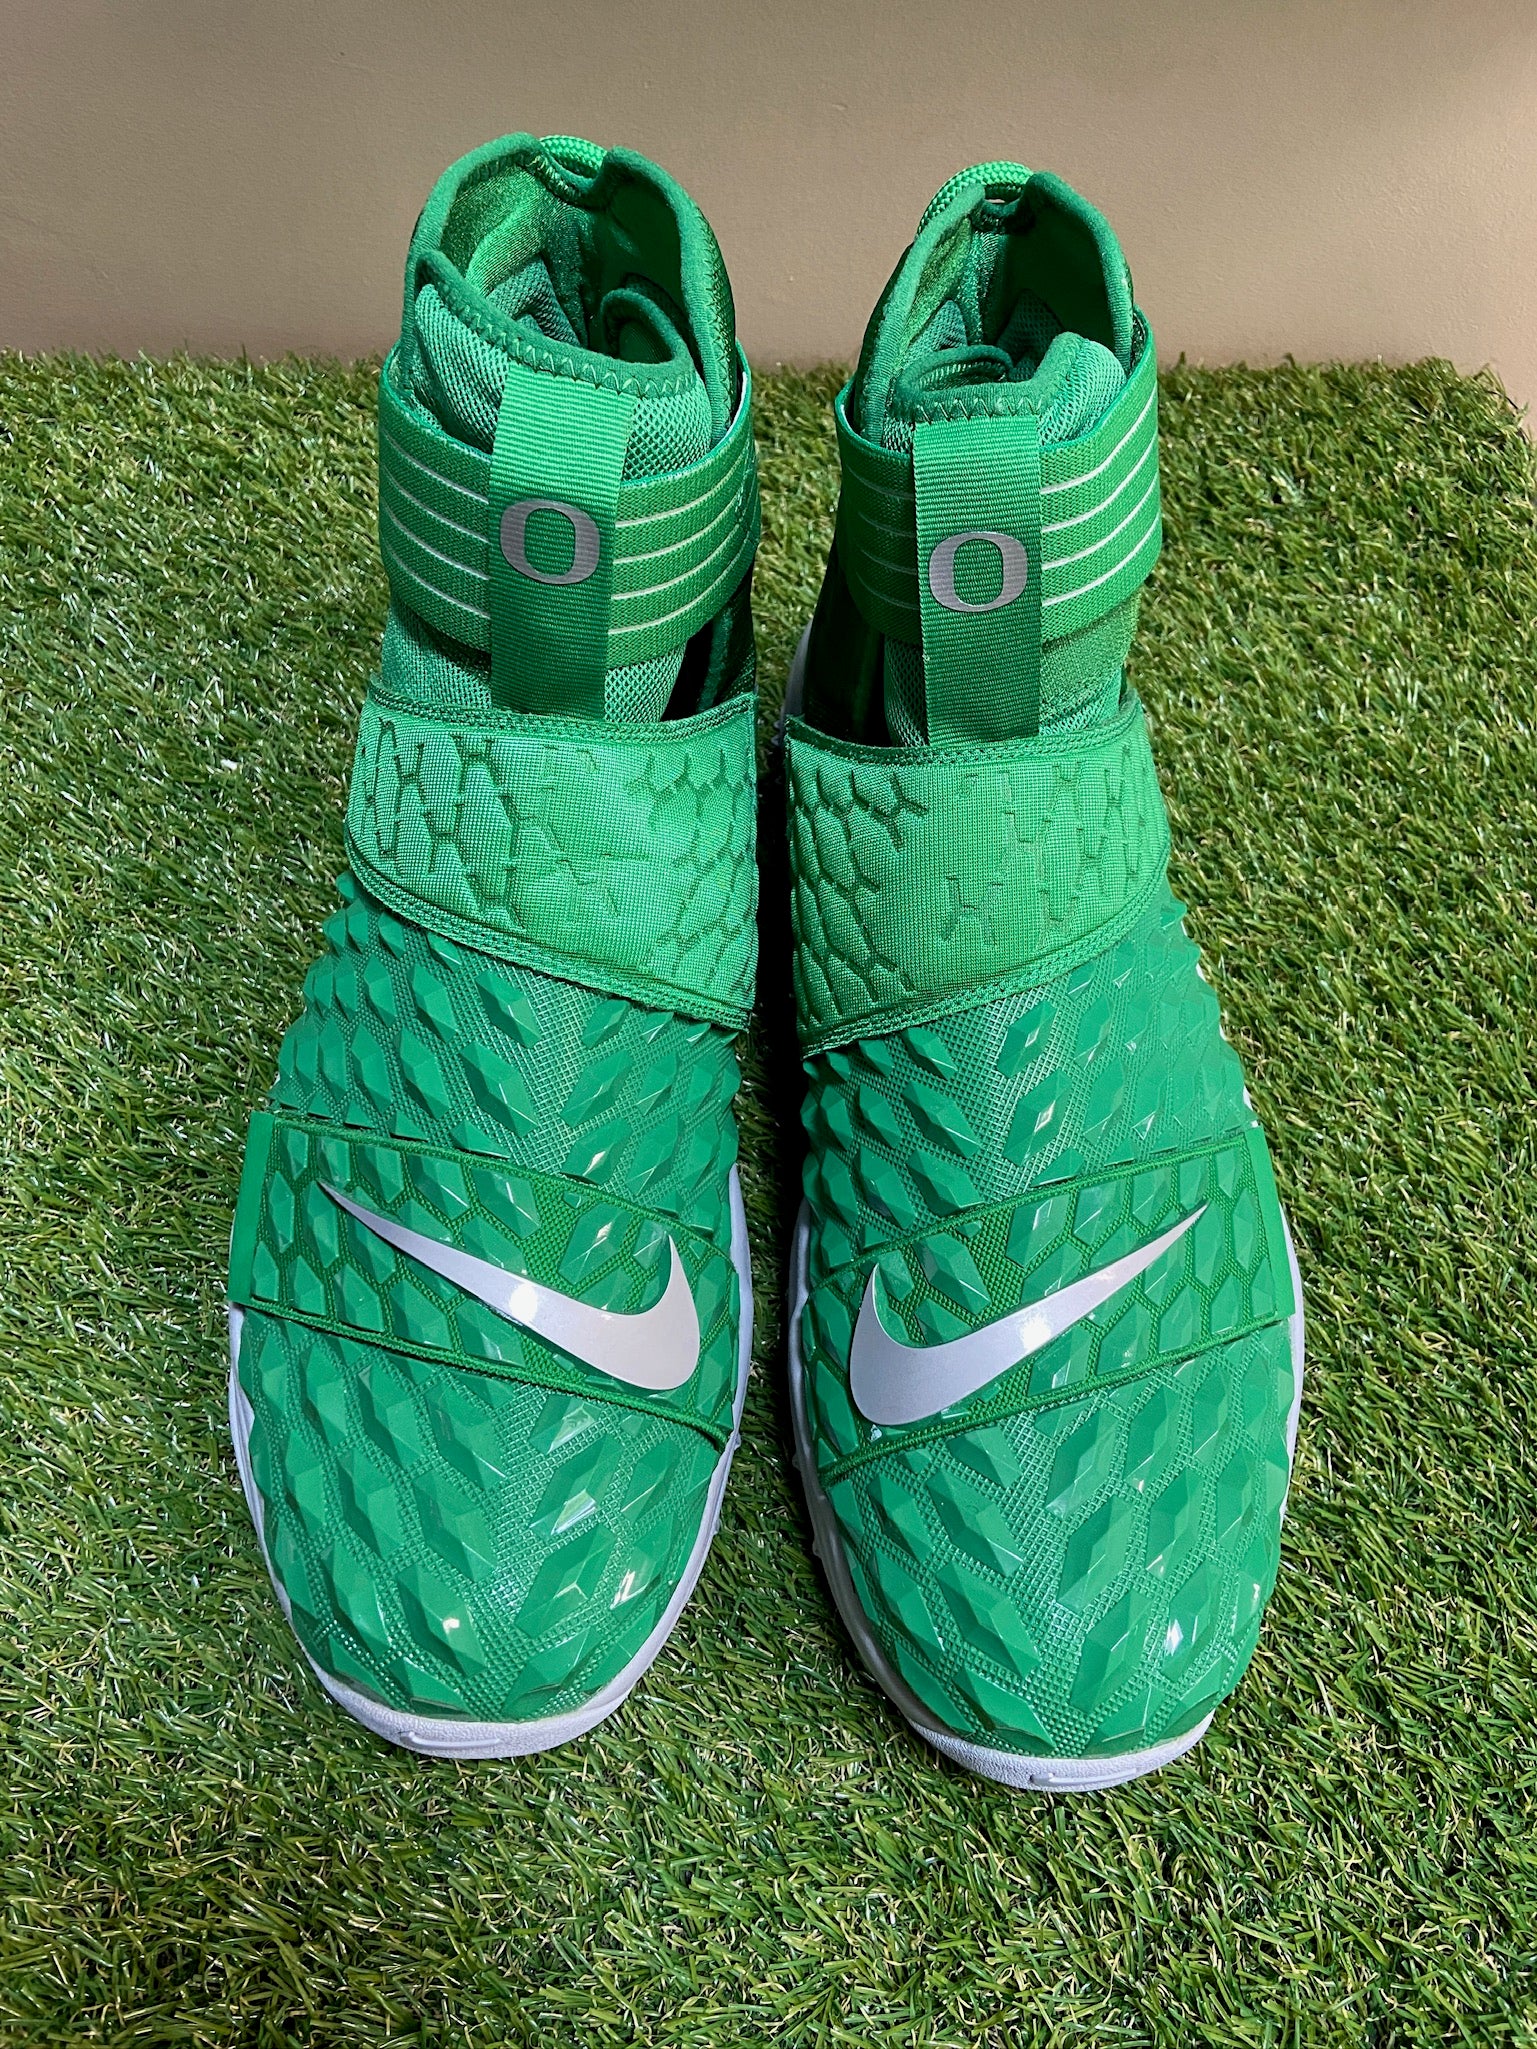 Calvin Johnson CJ81 Nike Shoes 2014 Pro Bowl Promo Sample Very Rare Size 10  | eBay